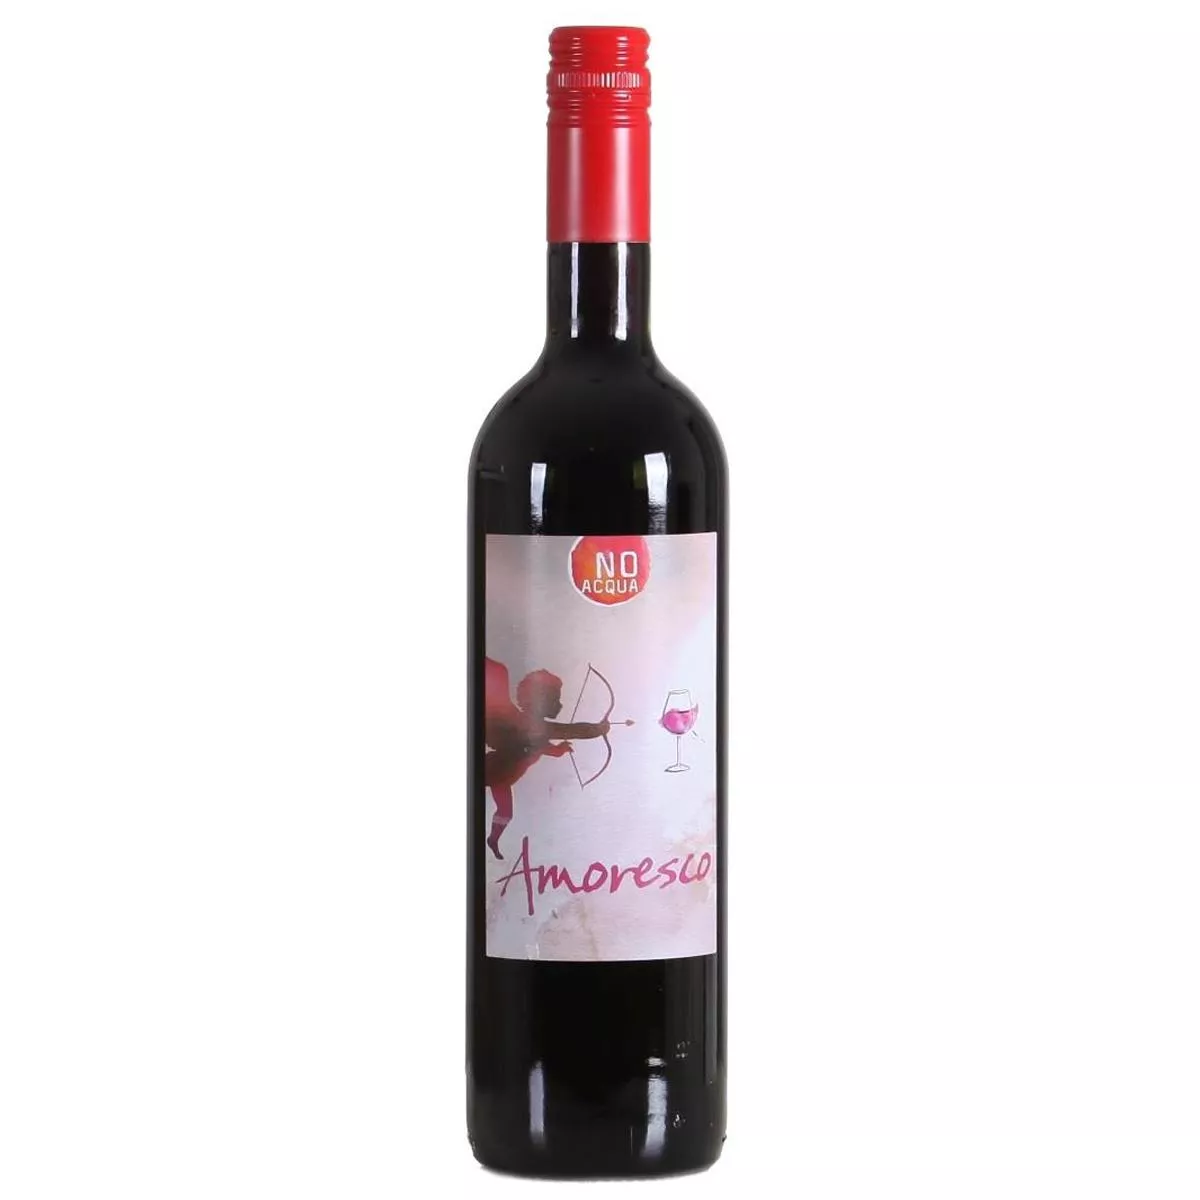 2018 Amoresco Tinto - No Acqua - Vinho Regional Alentejano